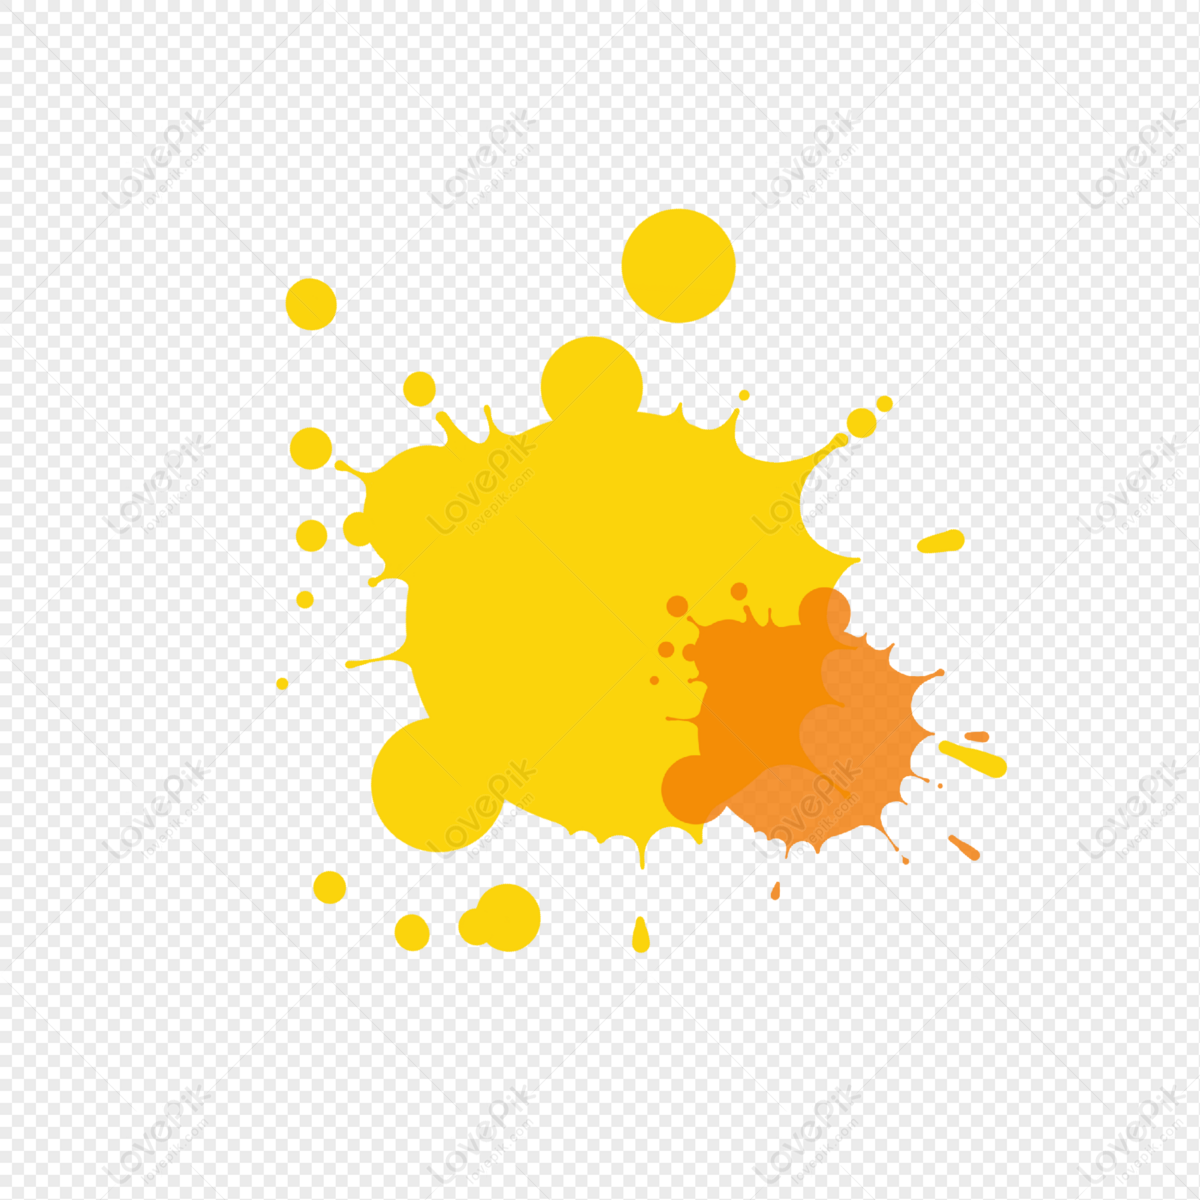 Paint splatter png images